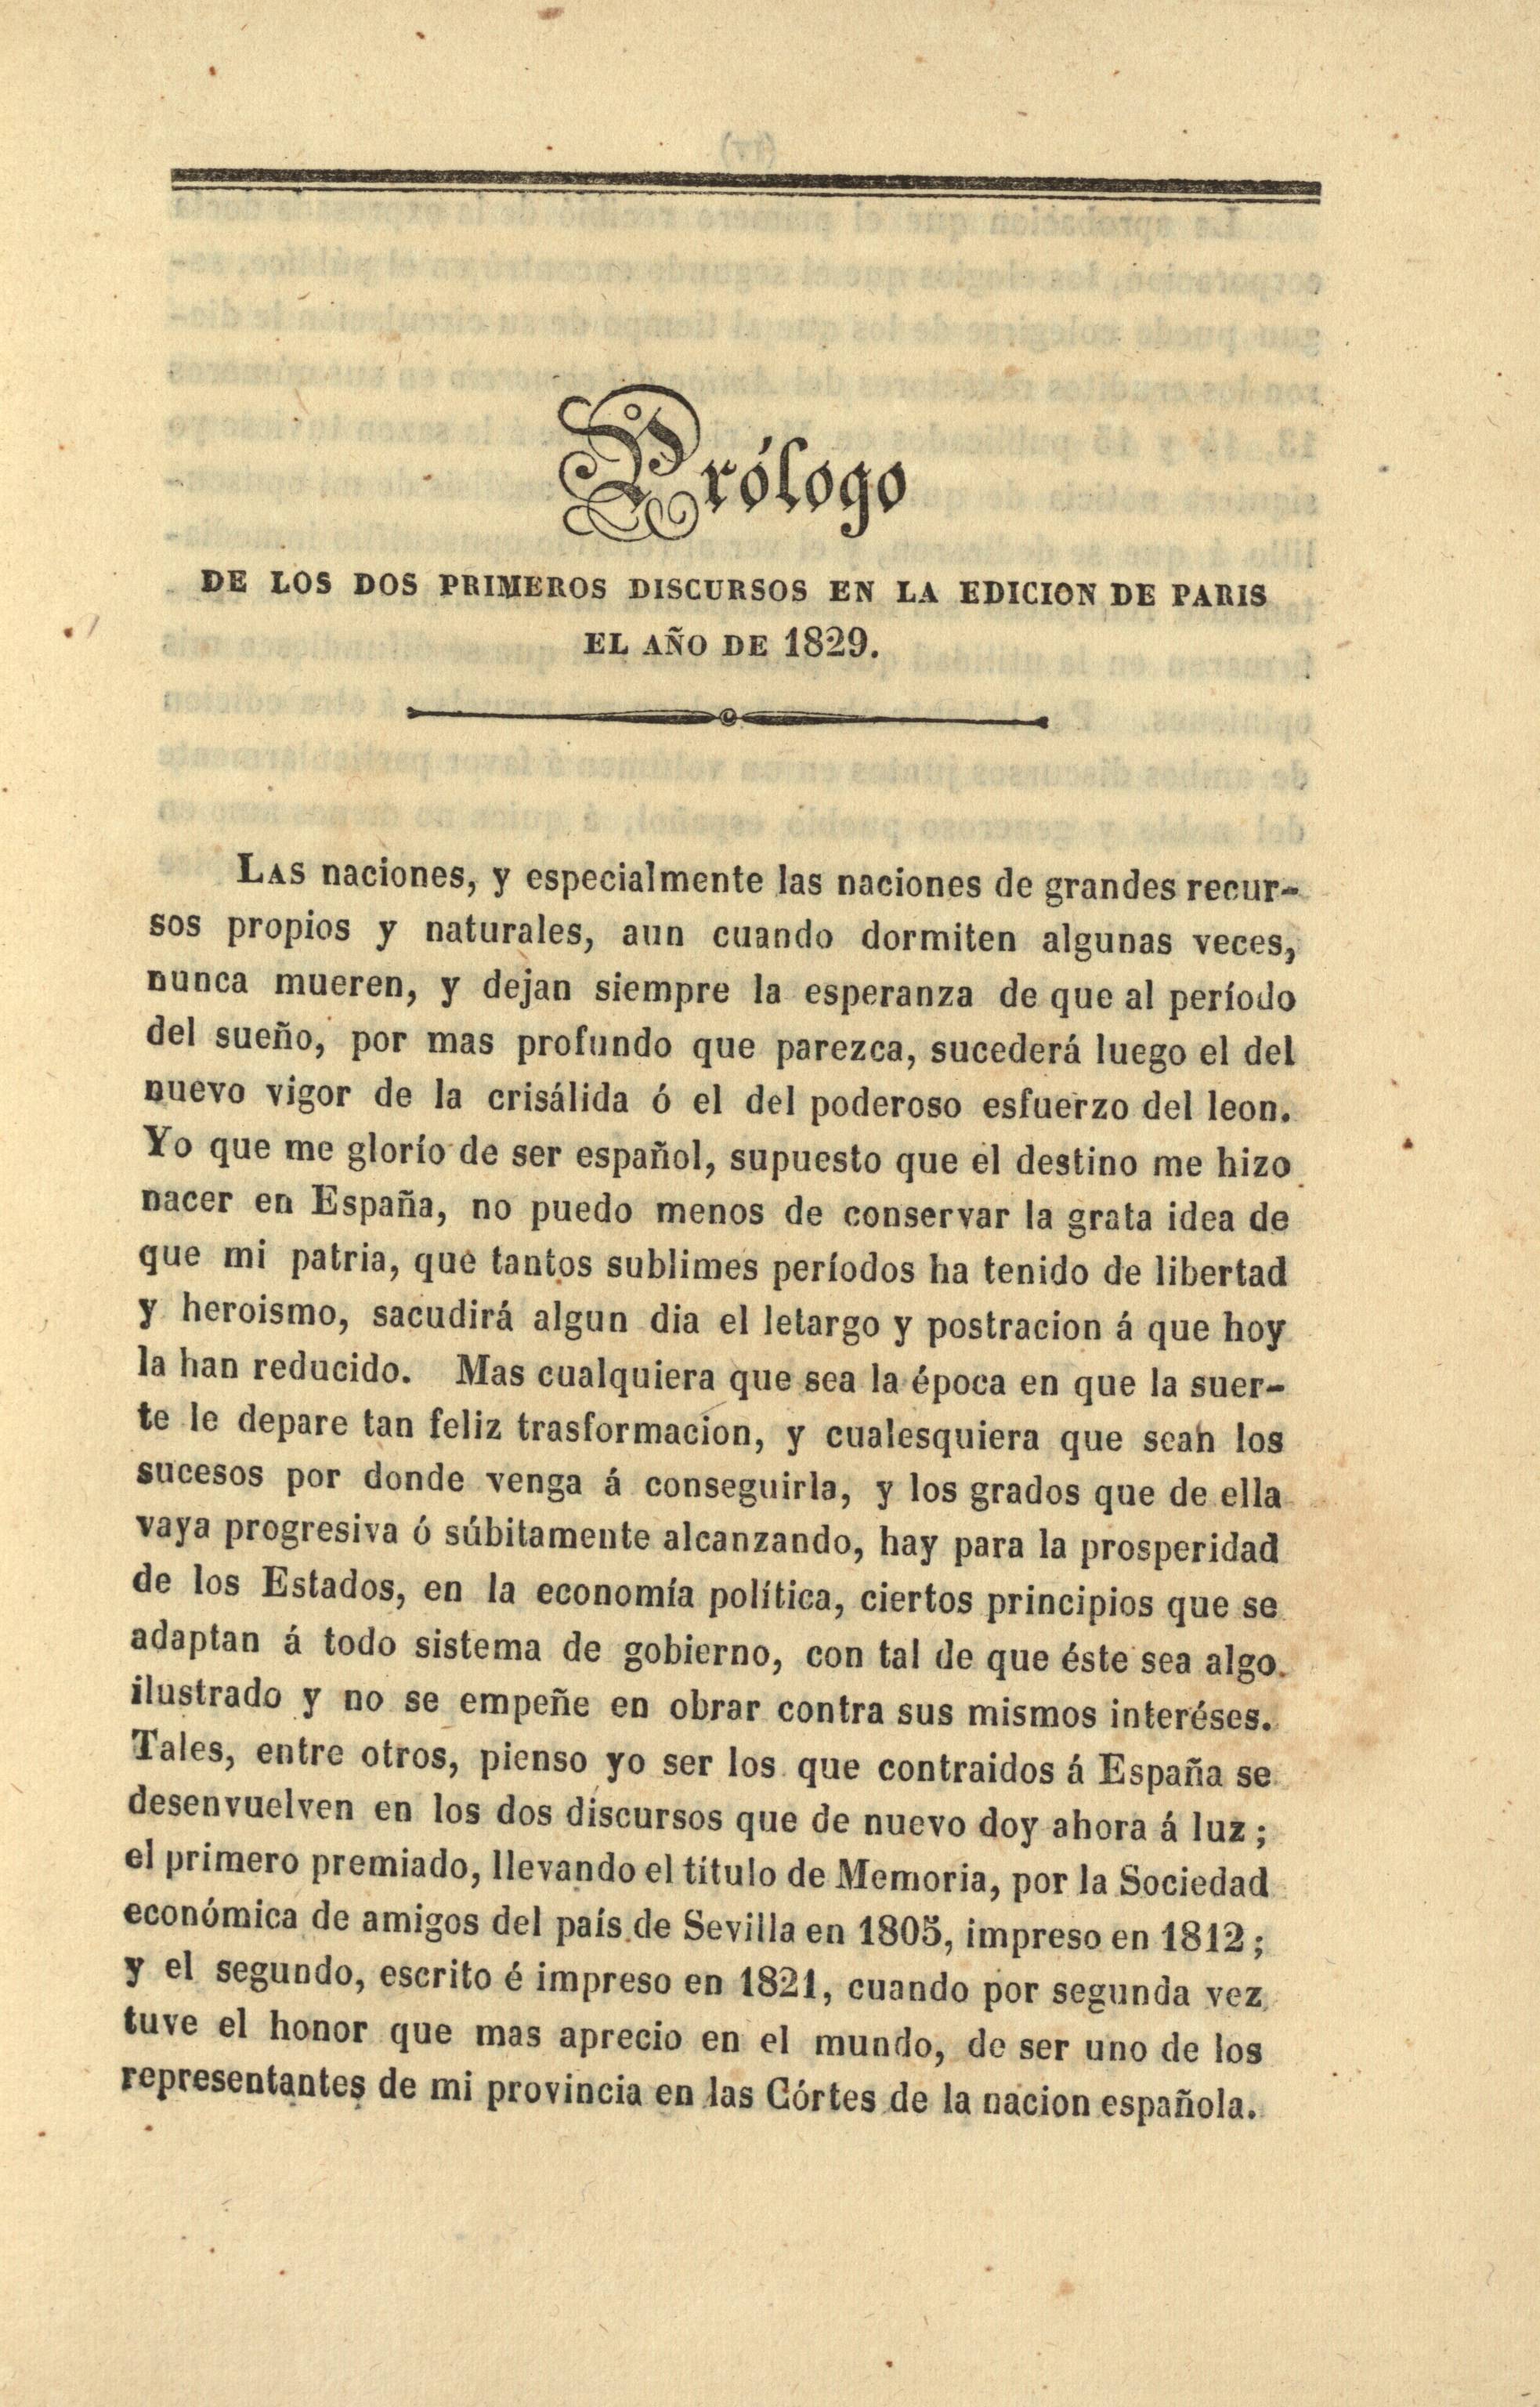 Prólogo de los dos primeros discursos en la edicion de Paris el año 1829